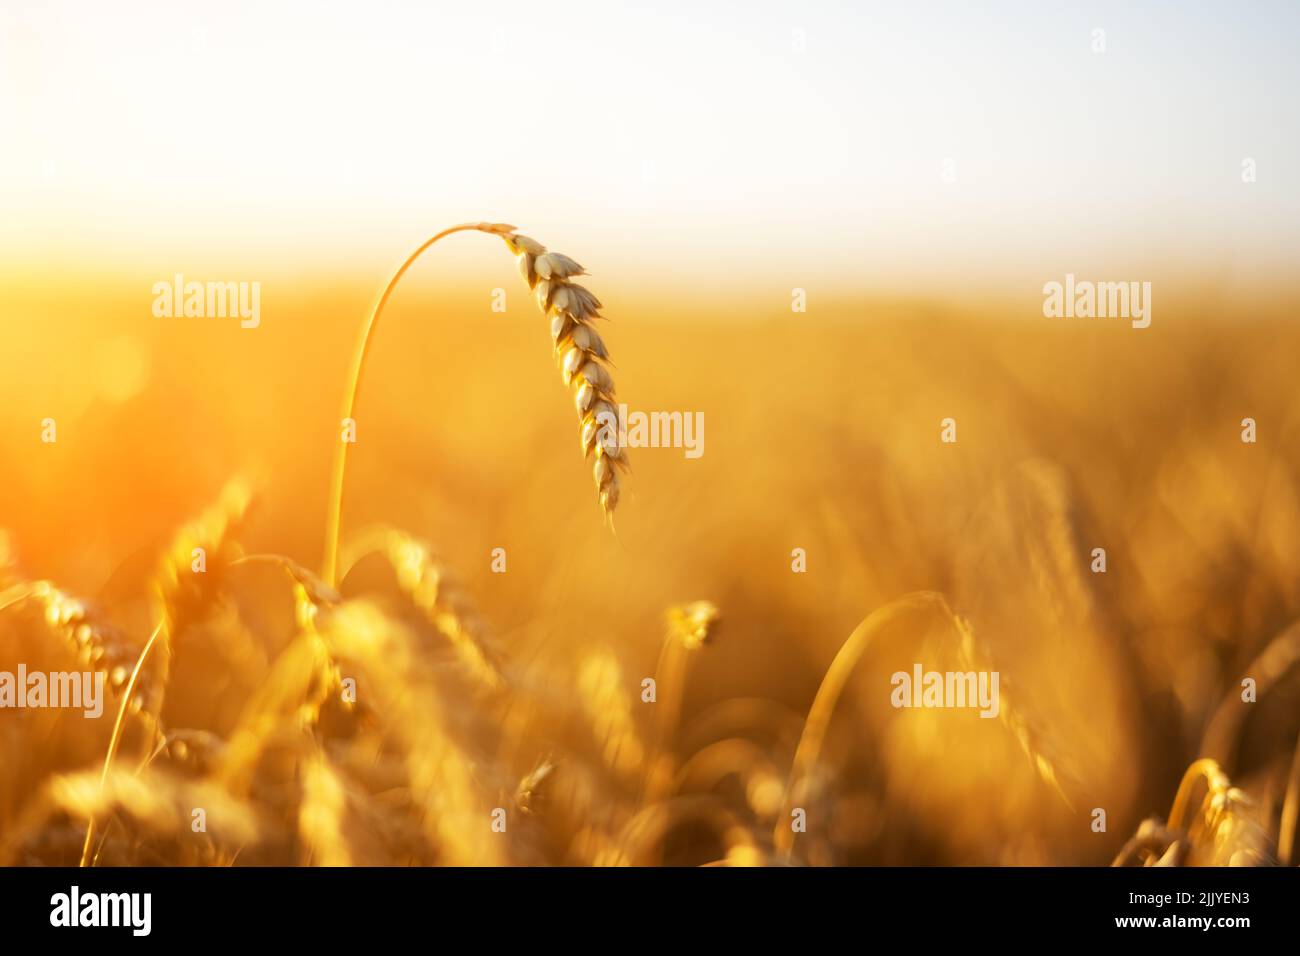 Espigas de trigo maduras en un campo dorado resplandeciente por la luz naranja del atardecer. Historia industrial y de naturaleza. Ucrania, Europa Foto de stock